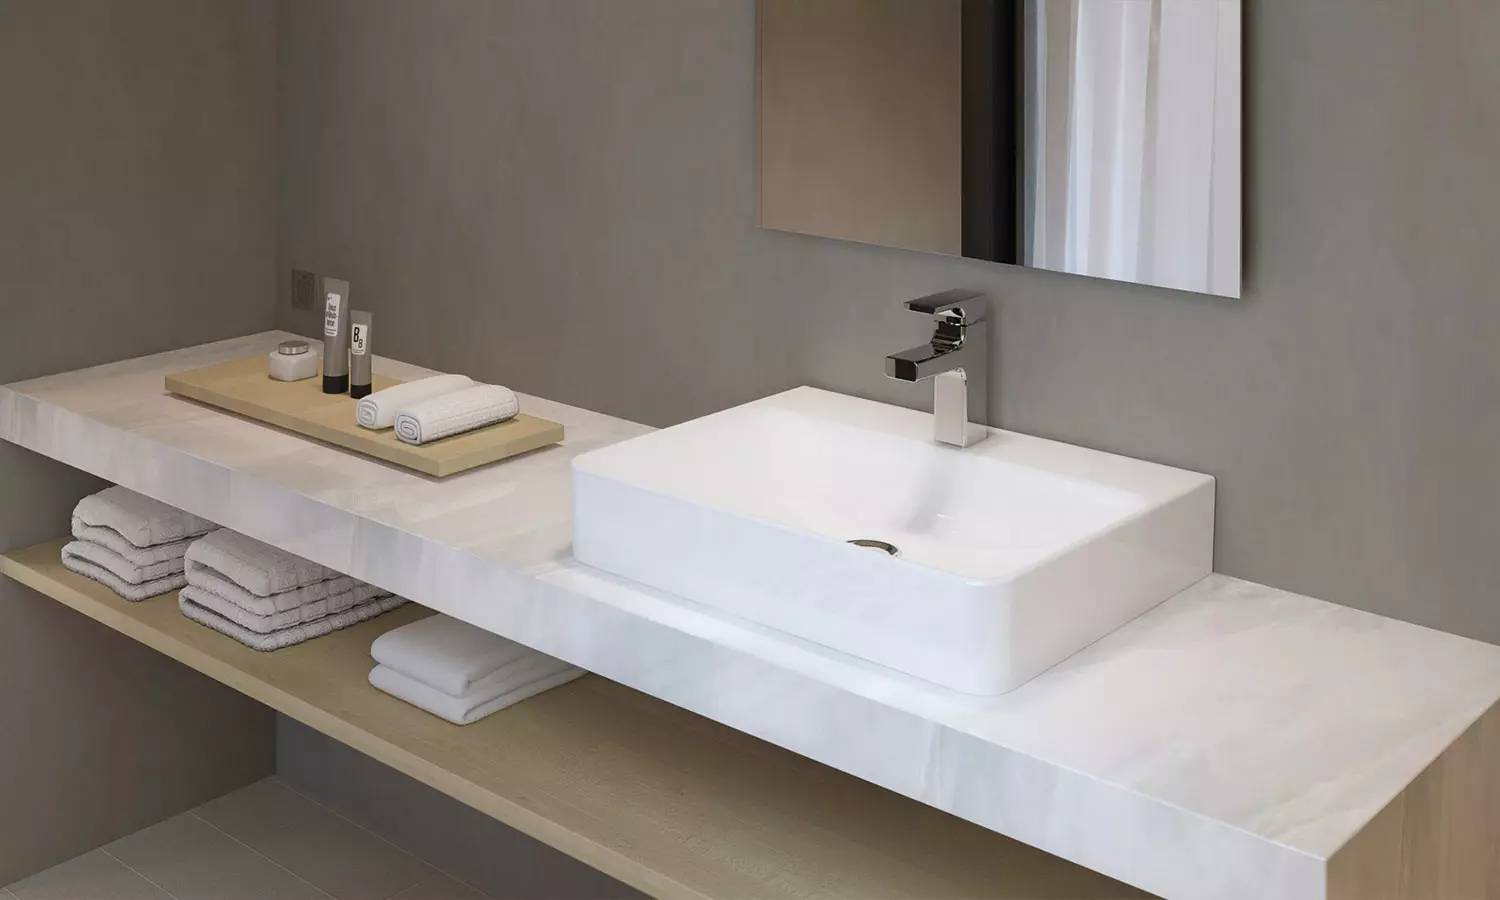 Suspenderad diskbänk i badrummet: Monterade tvättställ 50-60 cm med konsol och tvättning utan en skärare 55-80 cm, andra modeller 21424_5